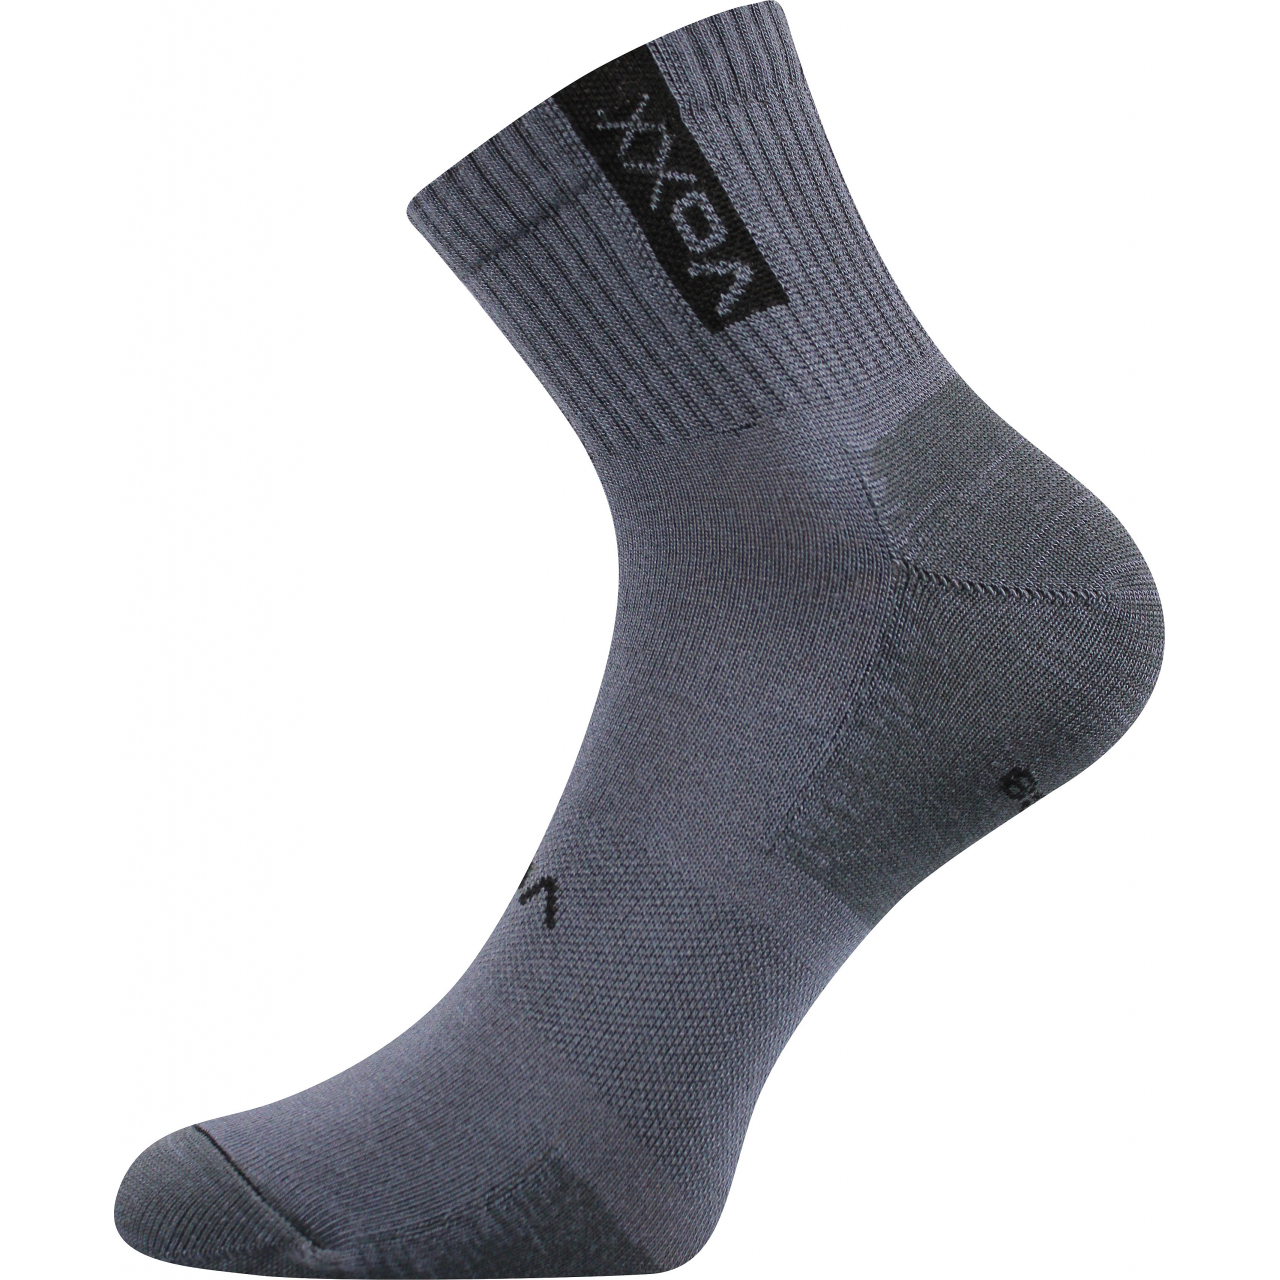 Ponožky sportovní unisex Voxx Brox - tmavě šedé, 43-46